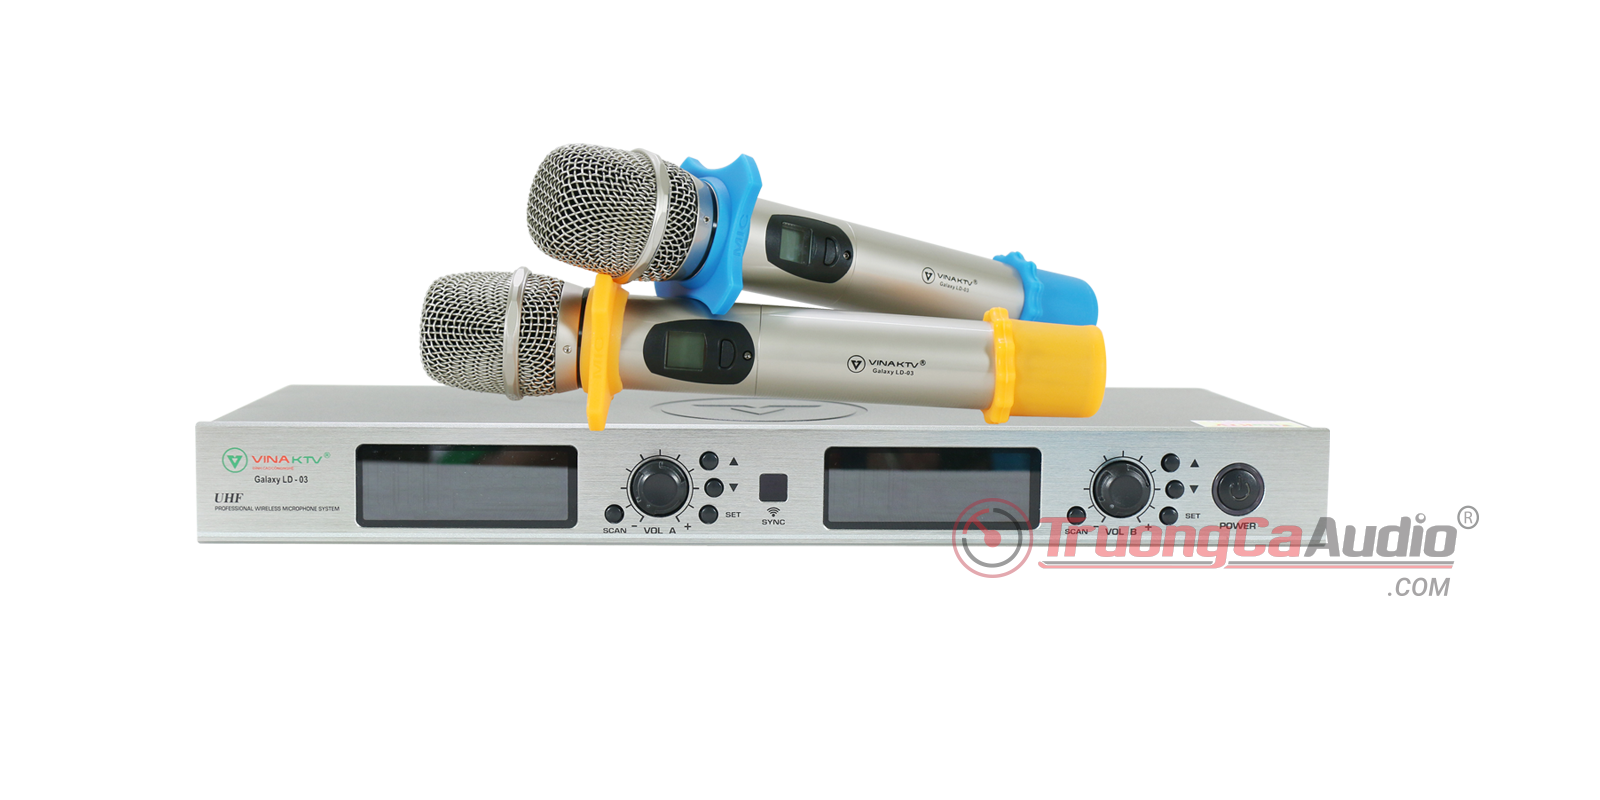 Micro LD3 là dòng Micro không dây chất lượng cao, dành cho các dàn karaoke gia đình và kinh doanh